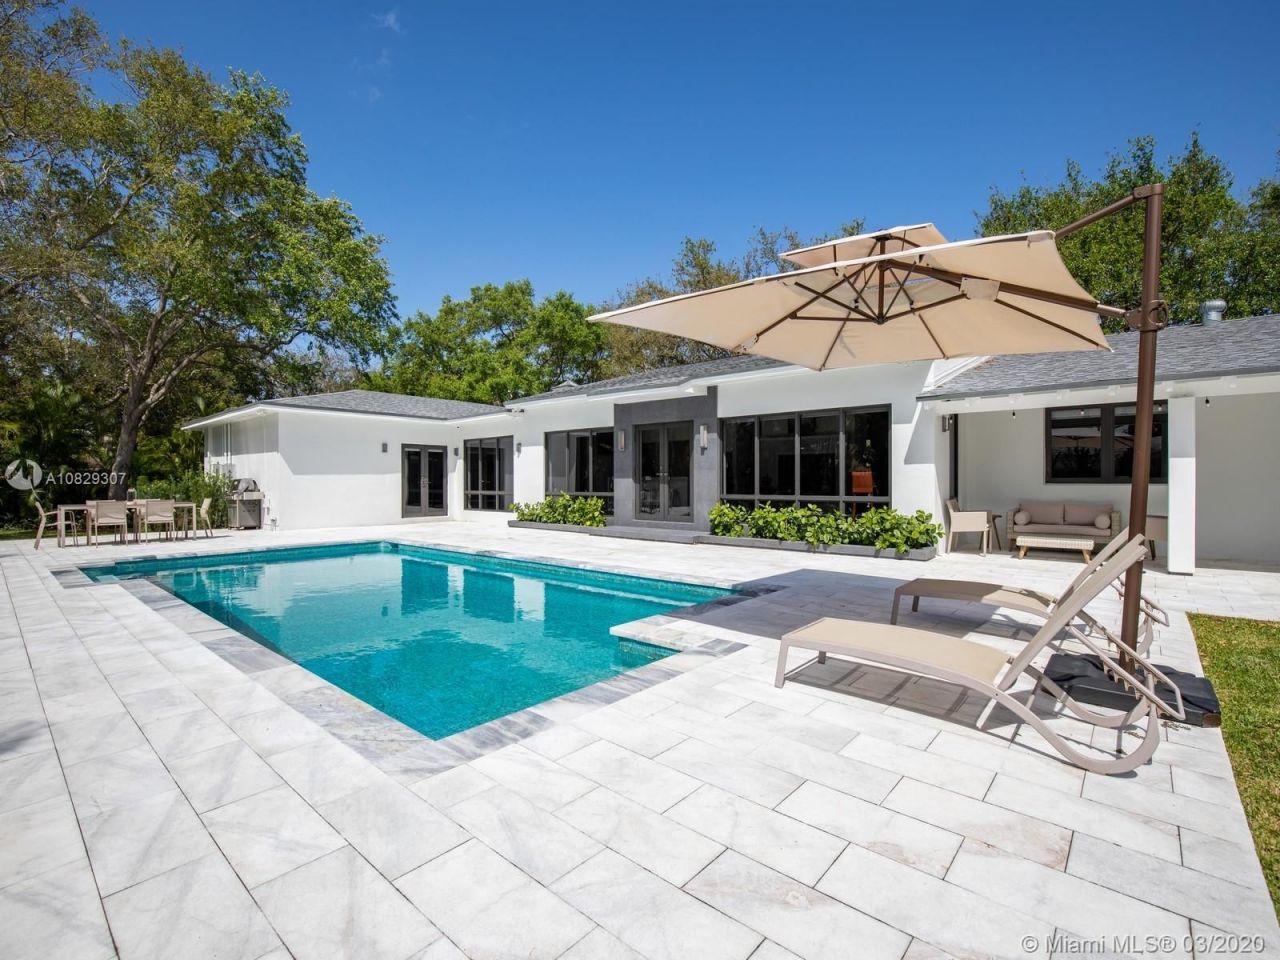 Villa in Miami, USA, 300 m² - Foto 1